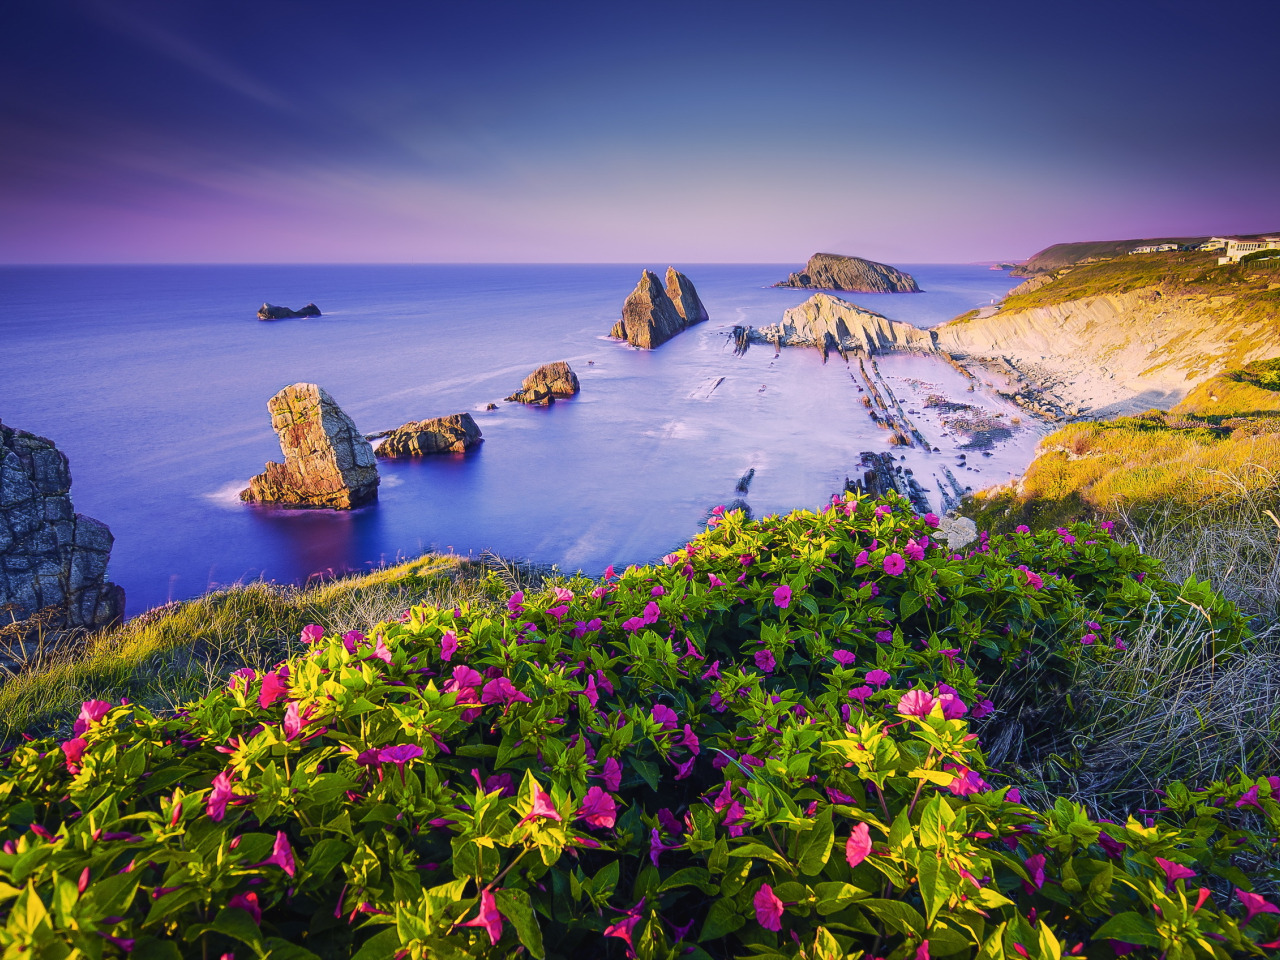 берег моря и цветы